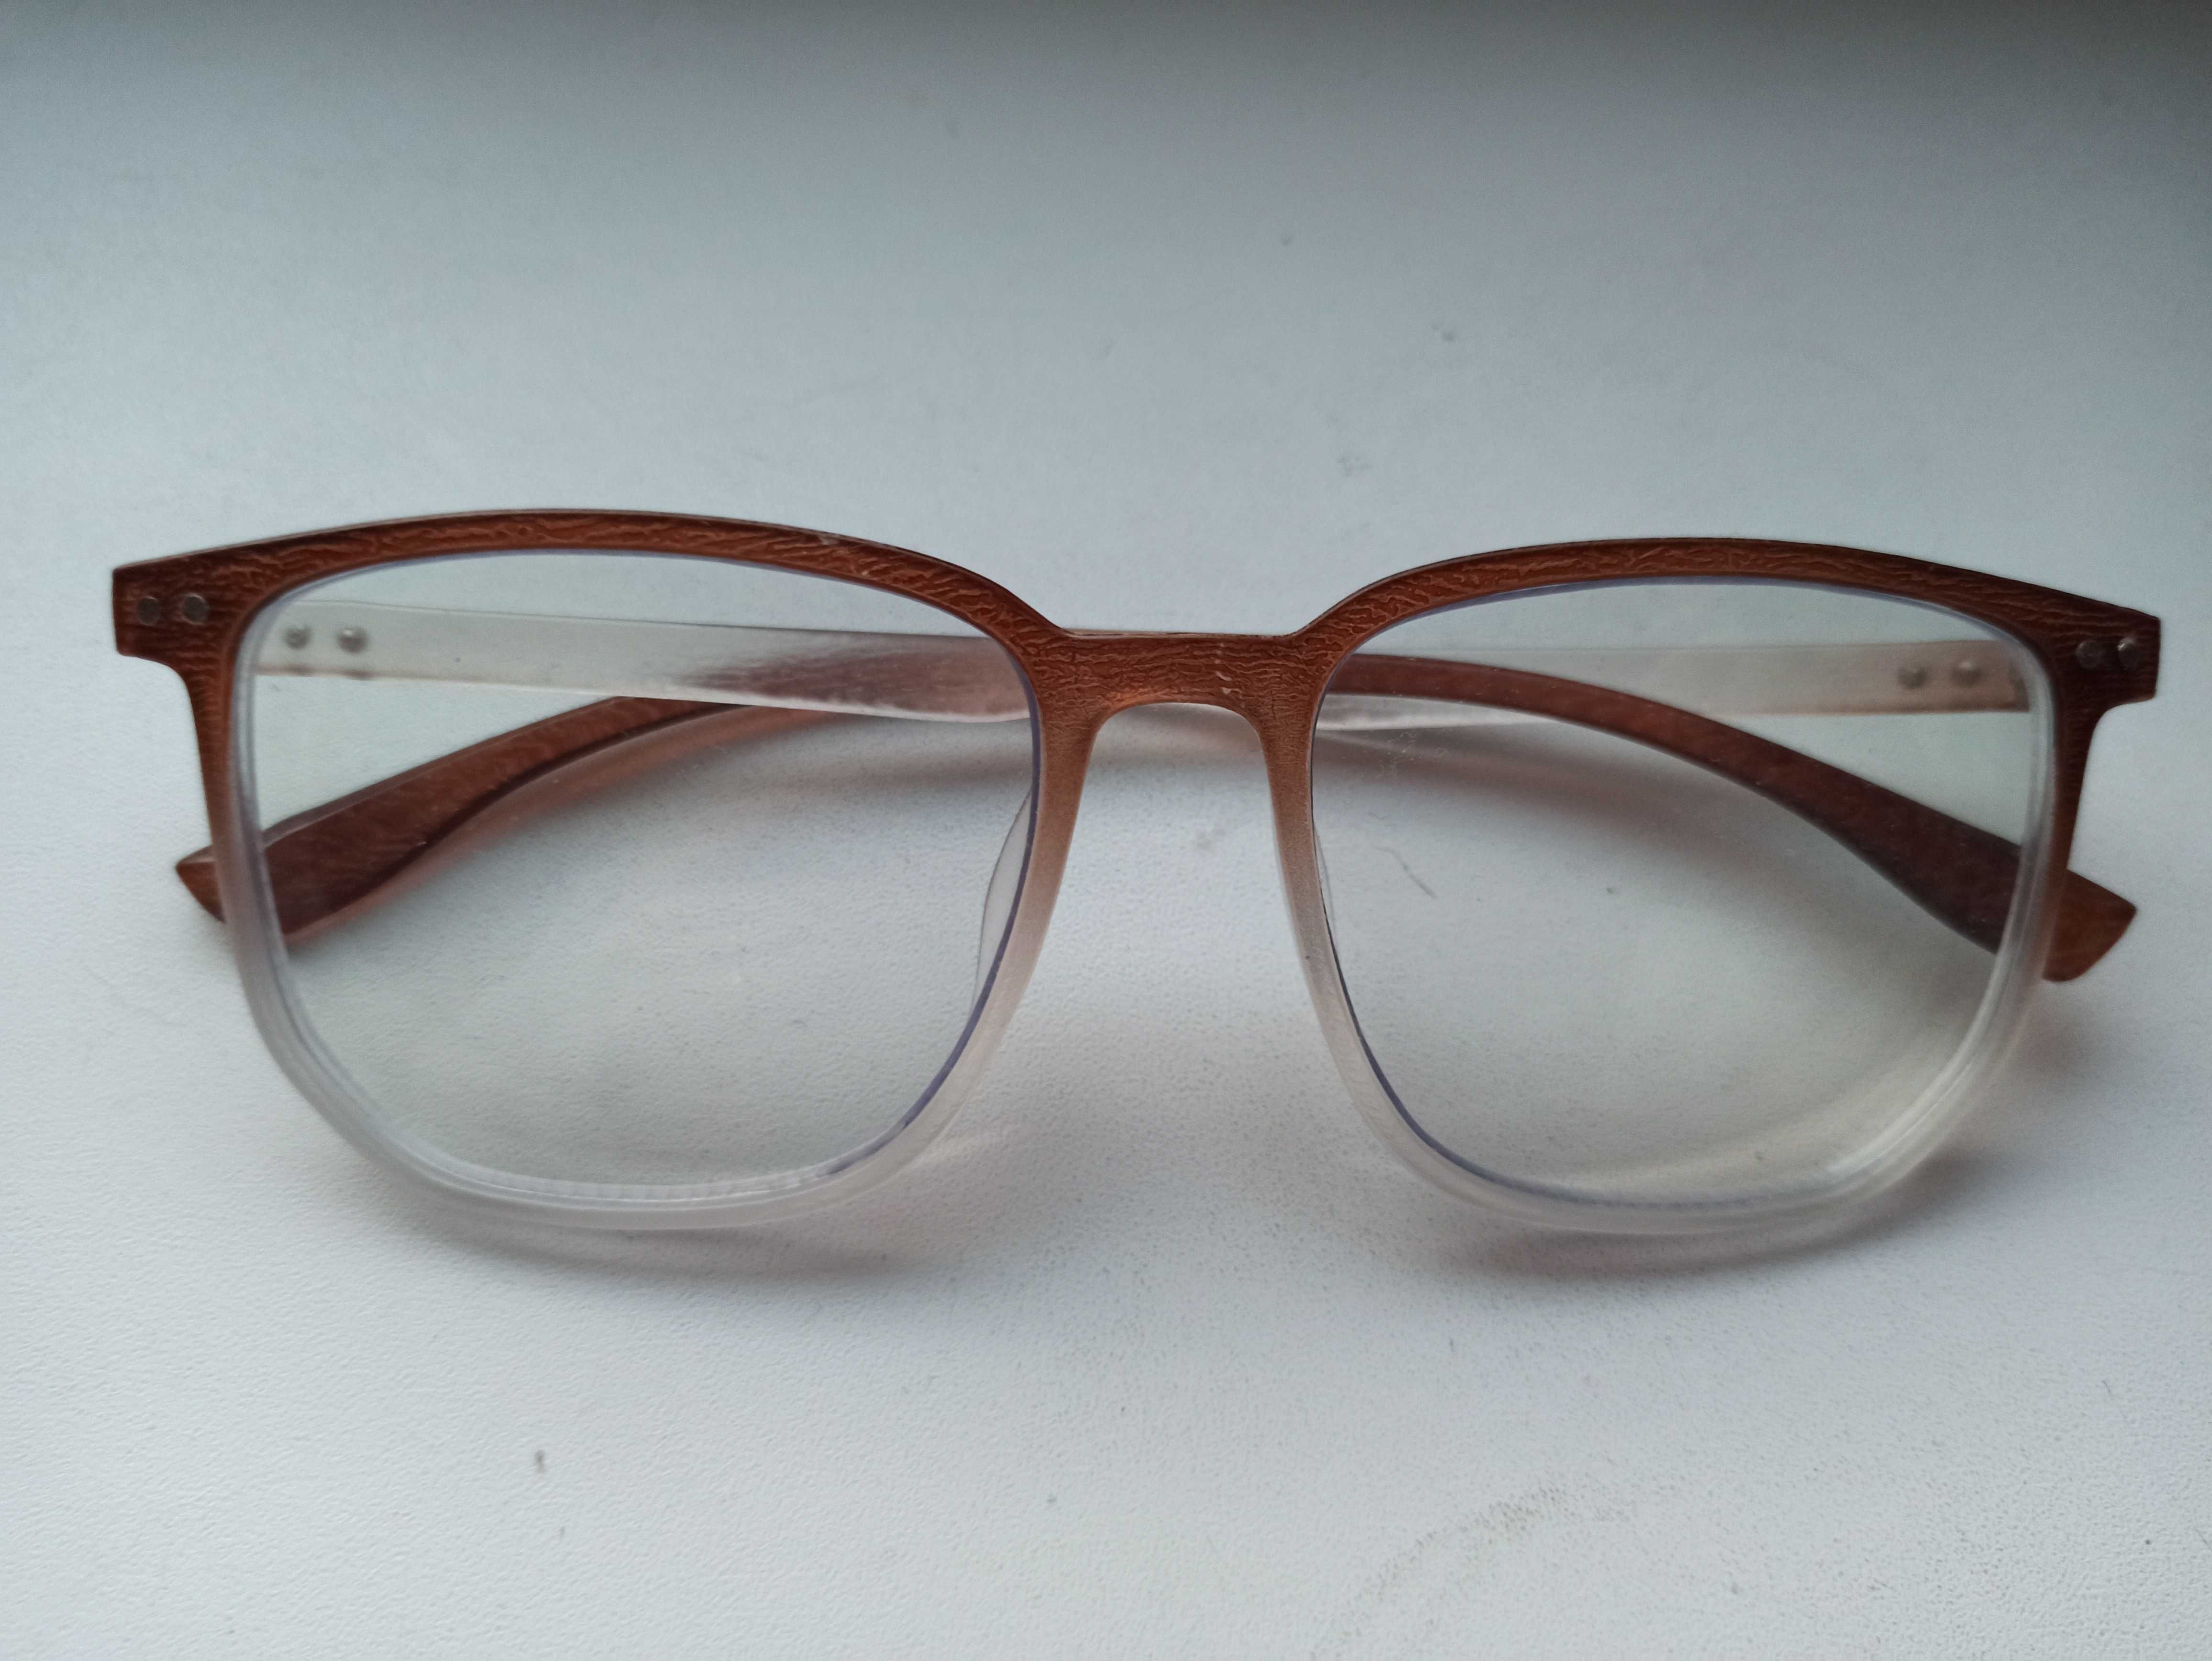 Brązowe klasyczne okulary -3 oprawki nowe